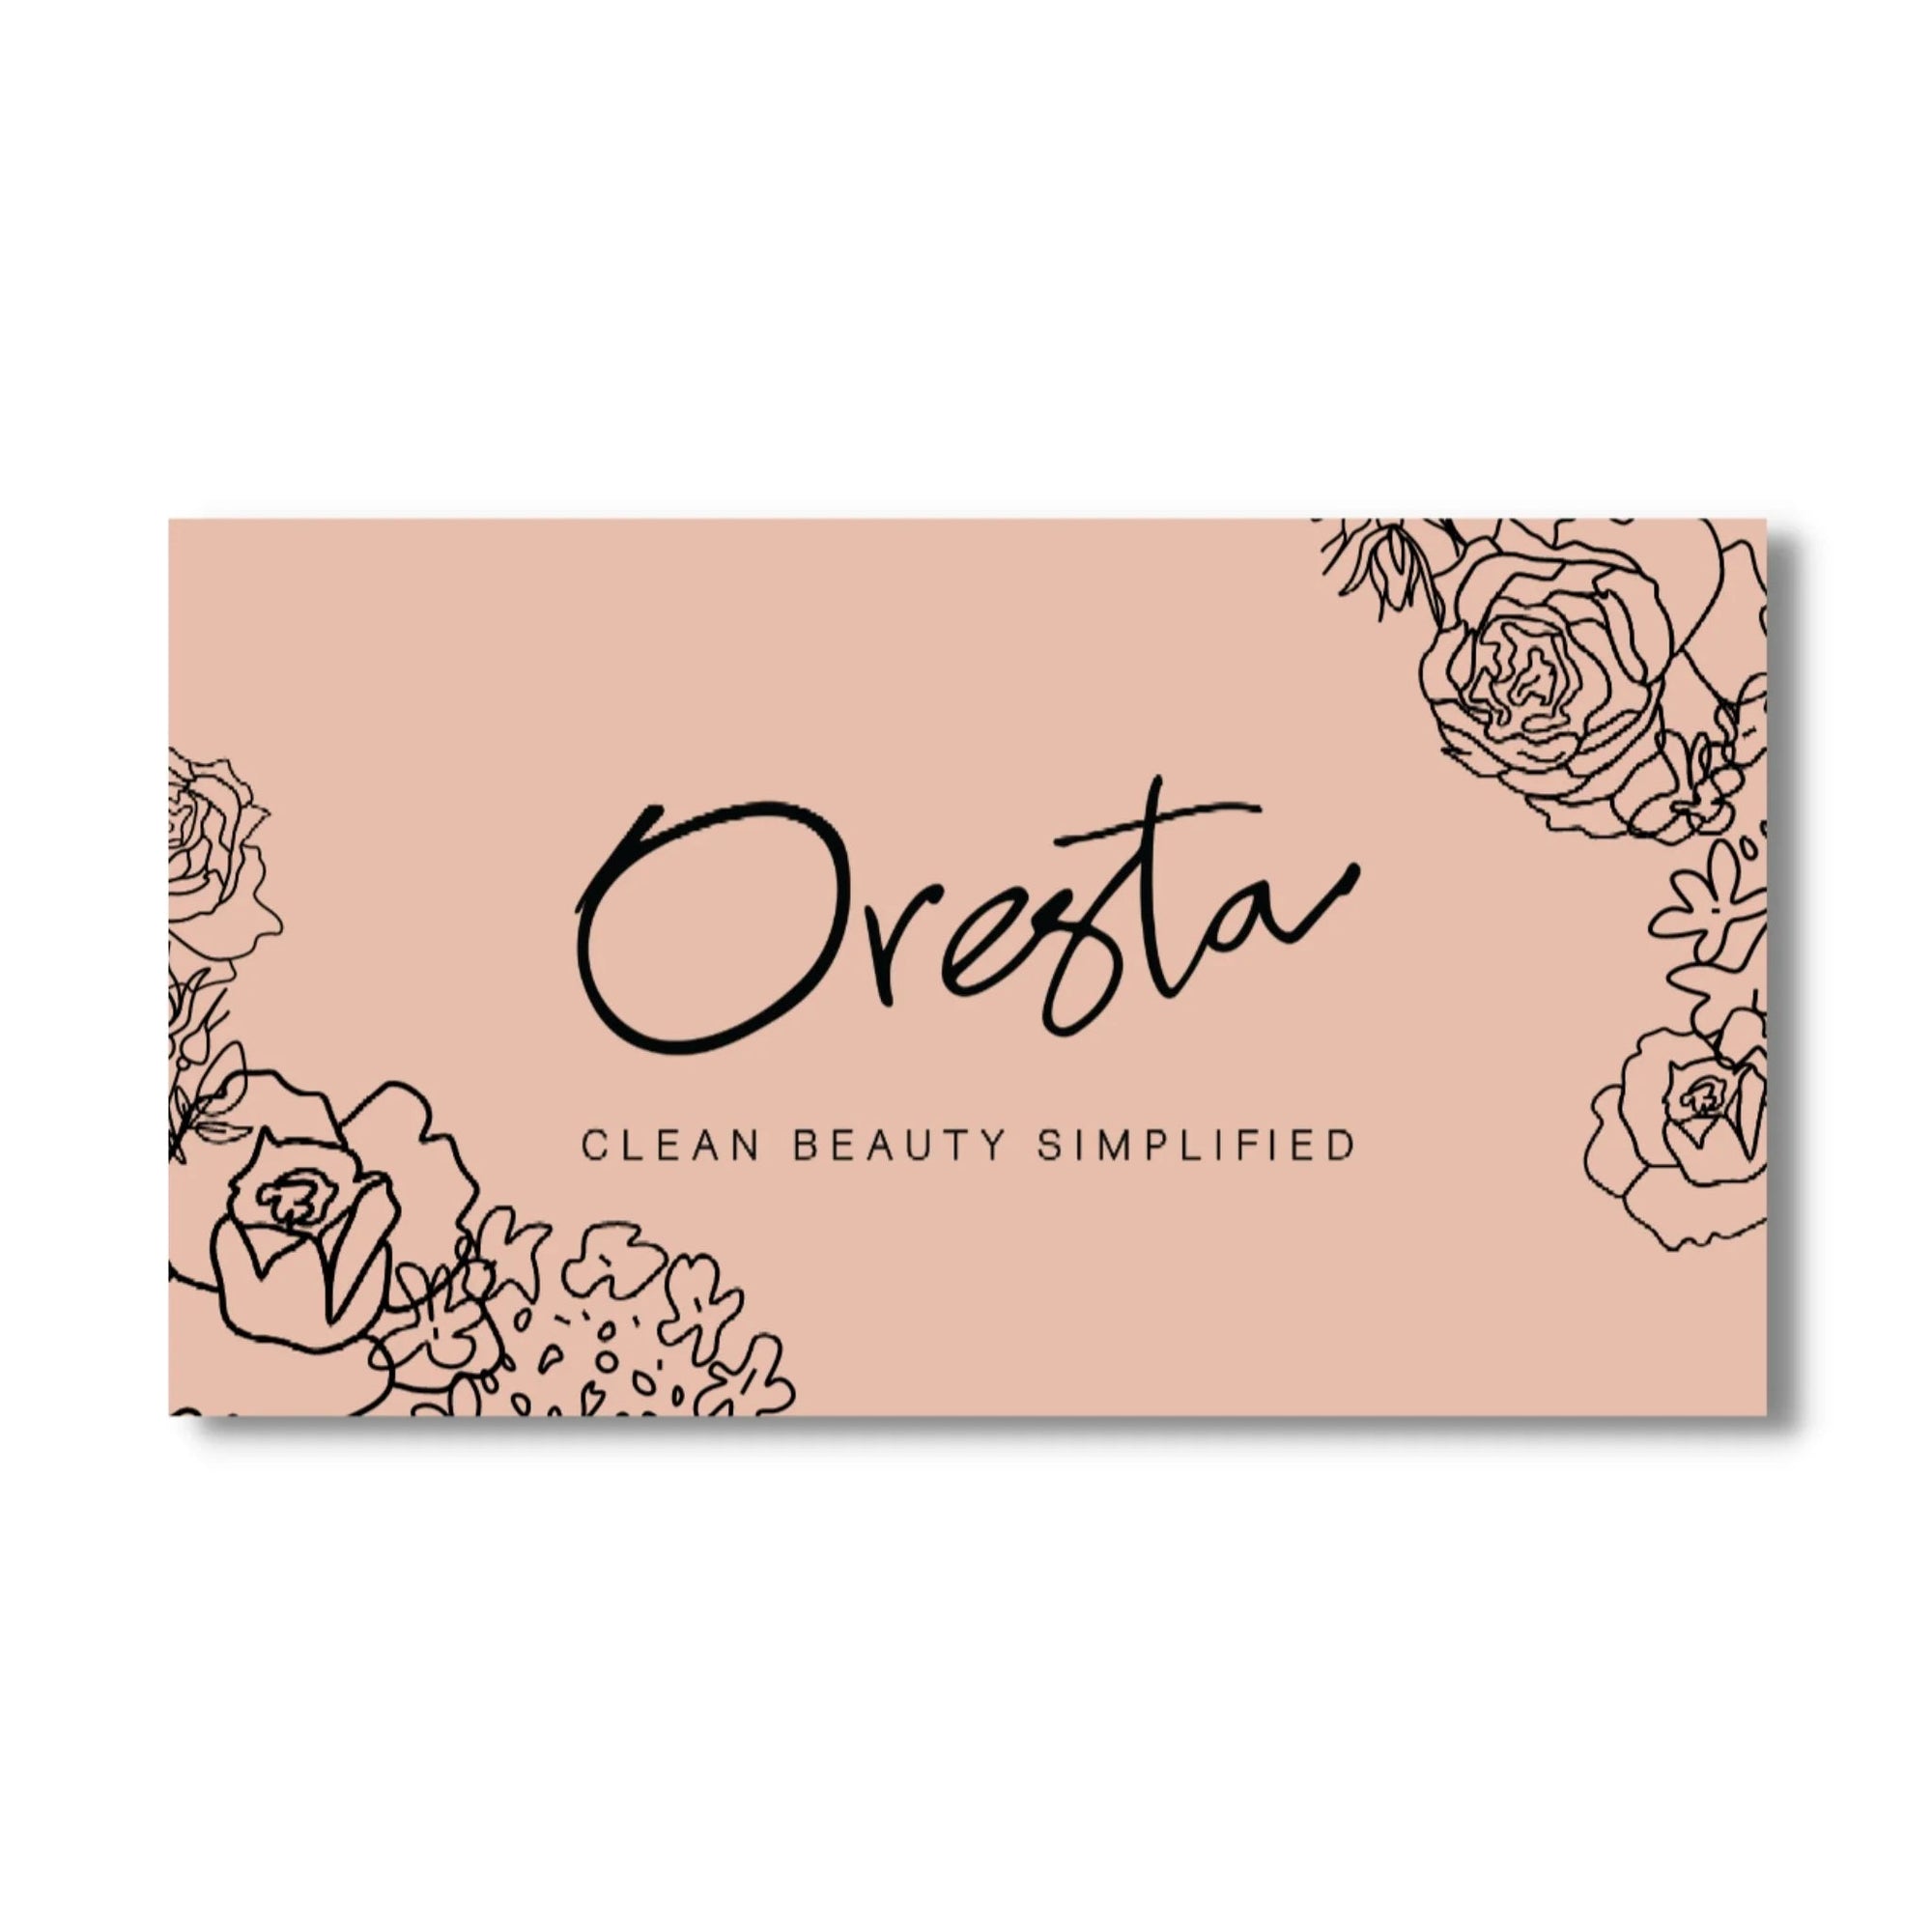 ORESTA clean beauty simplified - ORESTA Gift Card (Glebe + Online) - ORESTA clean beauty simplified